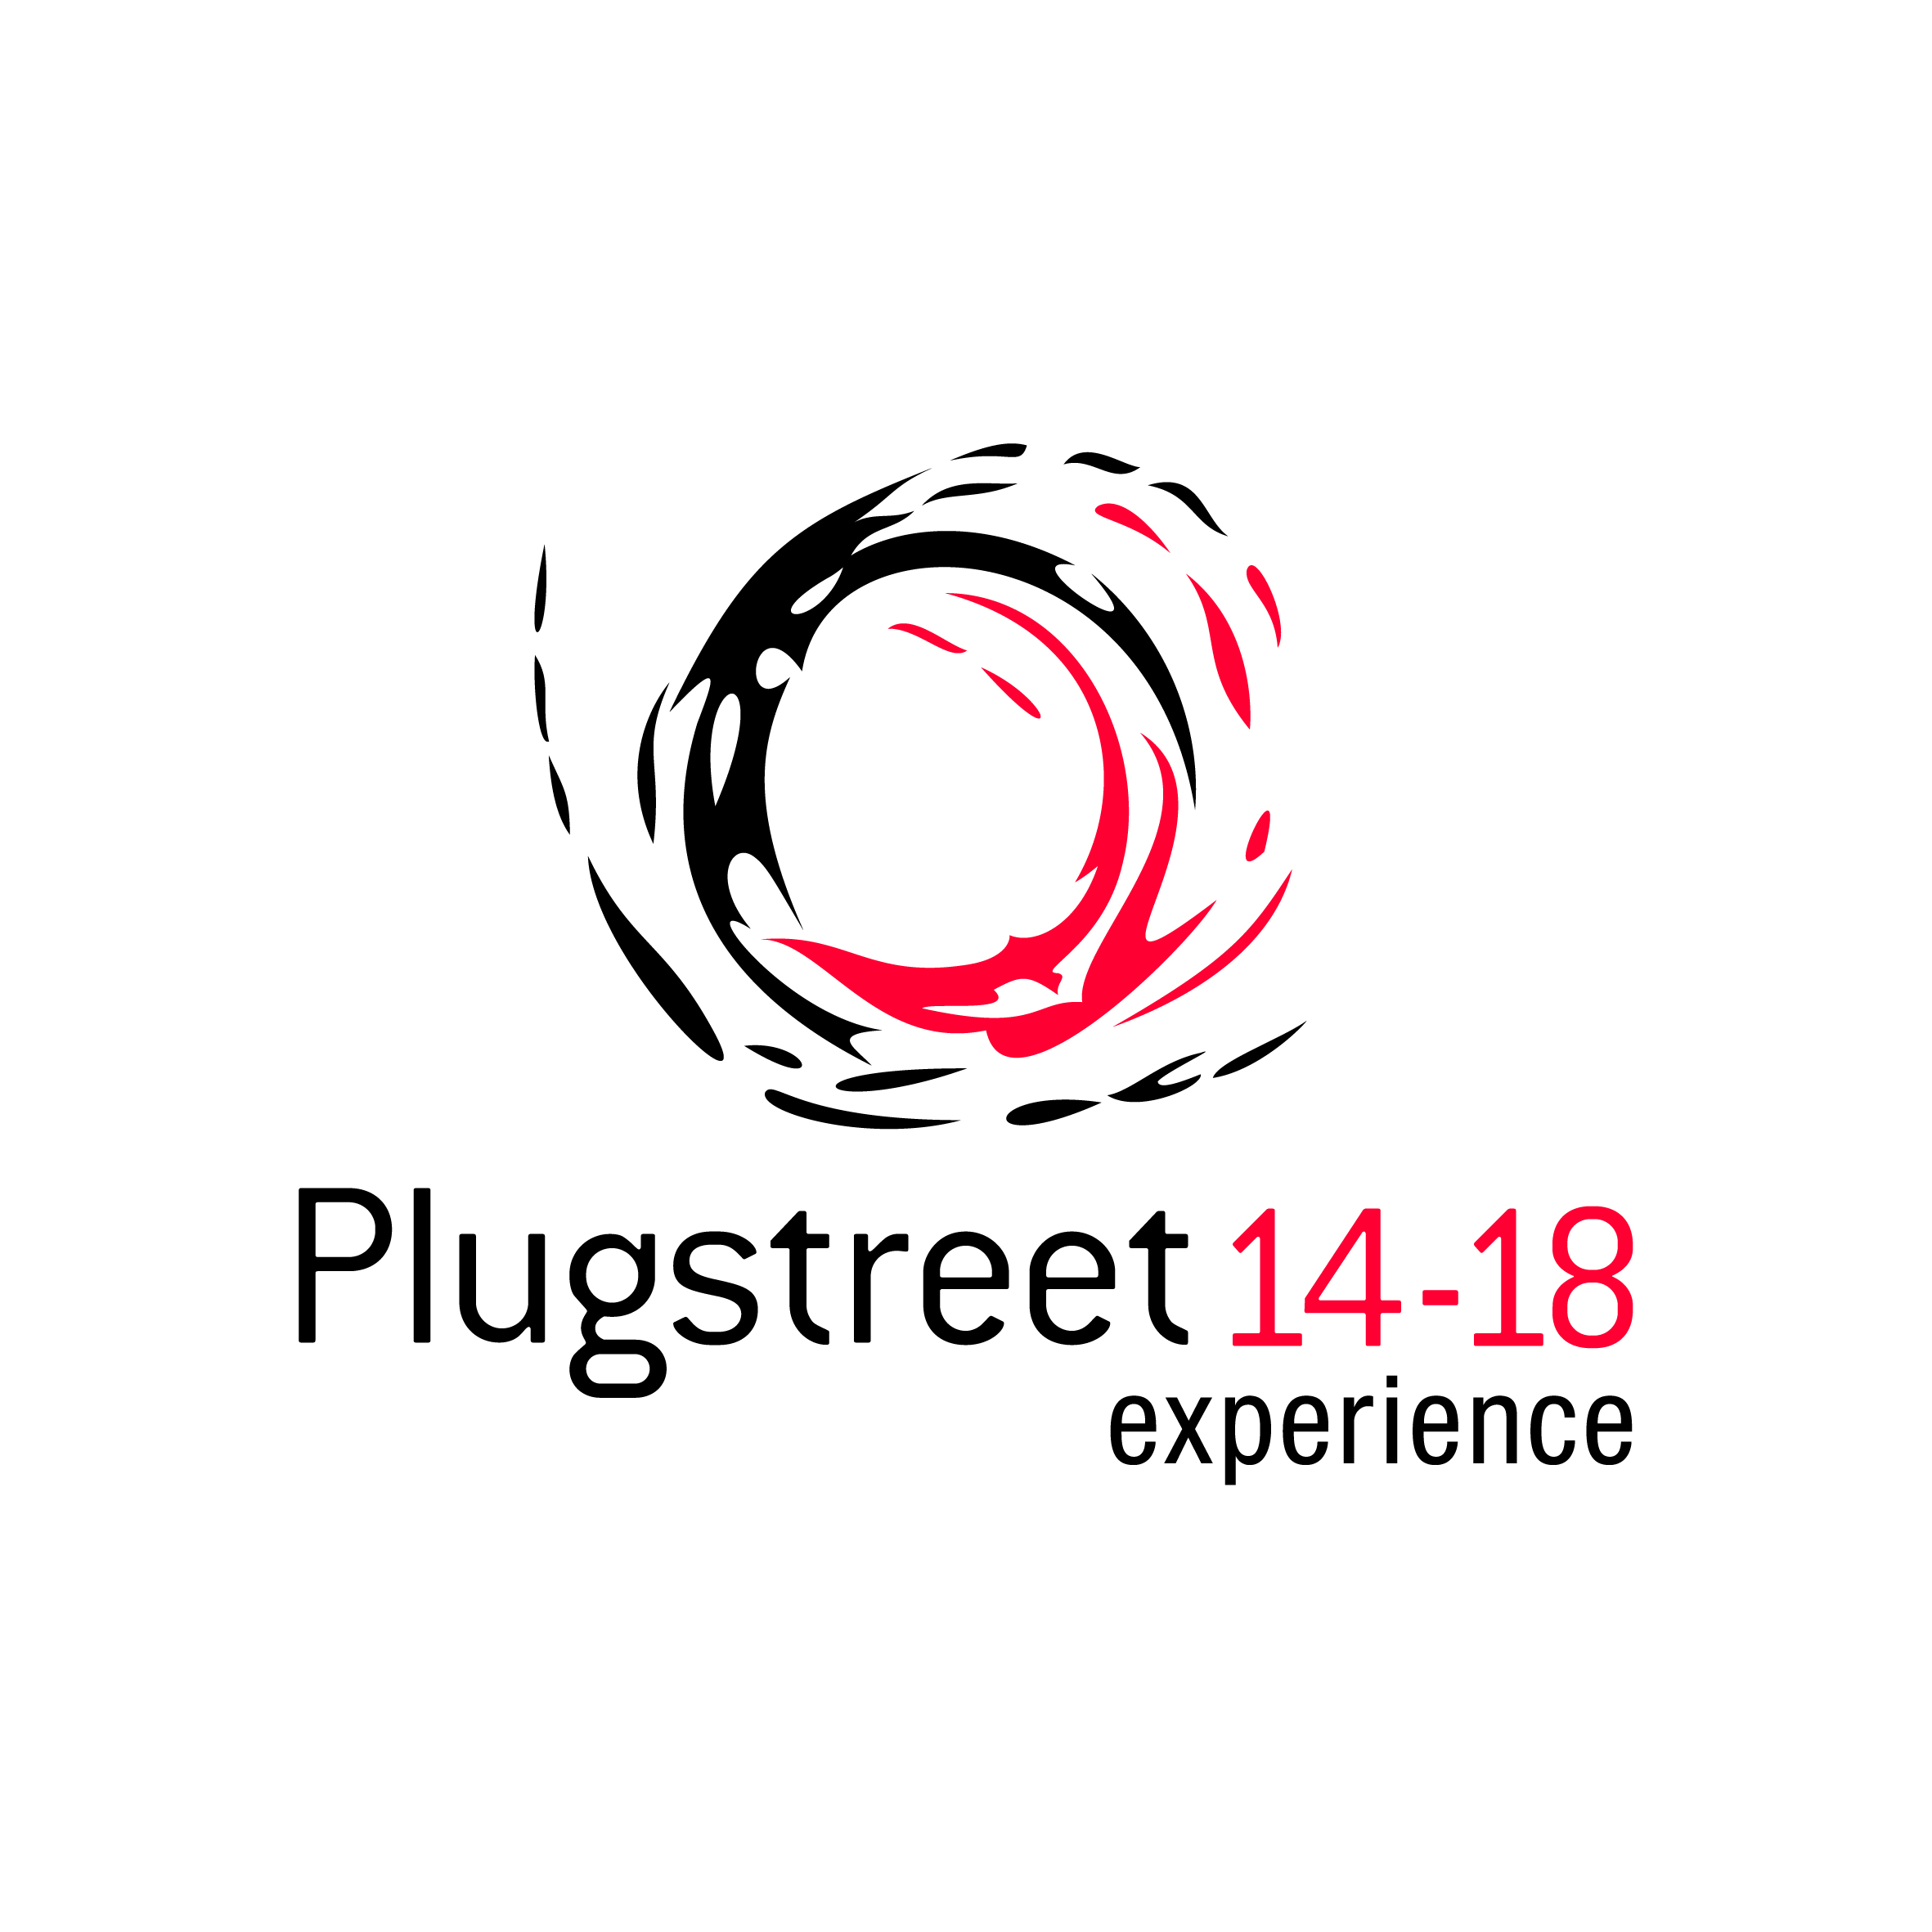 Plugstreet 14-18 experience